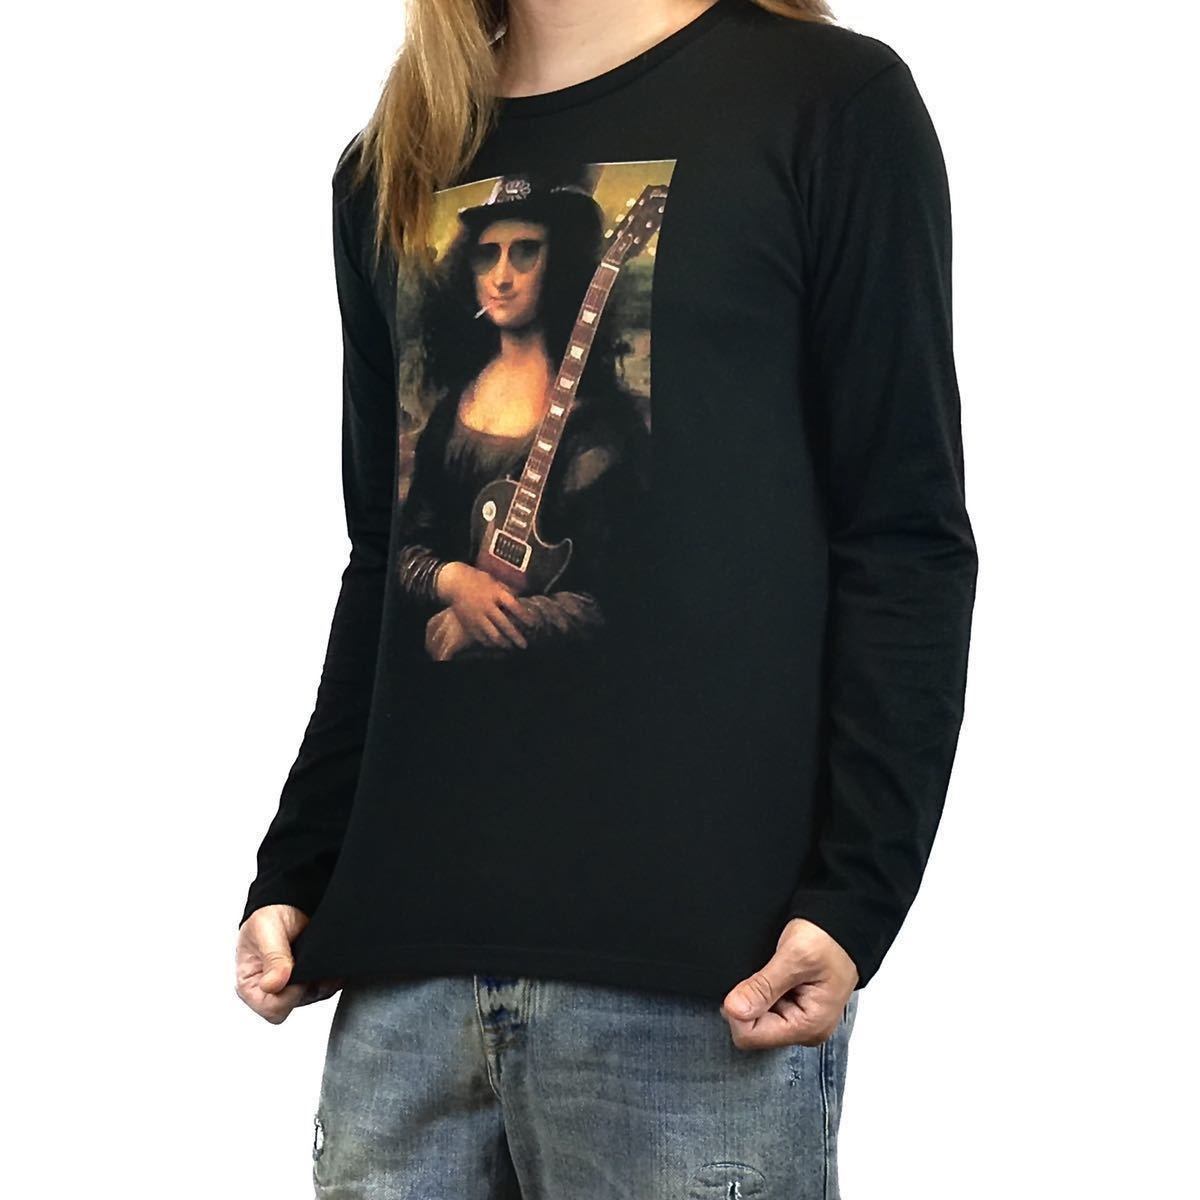 新品 モナリザ スラッシュ ガンズアンドローゼス レスポールギター ギタリスト アート ロンT 長袖Tシャツ XS Sサイズ 小さい タイト スリム